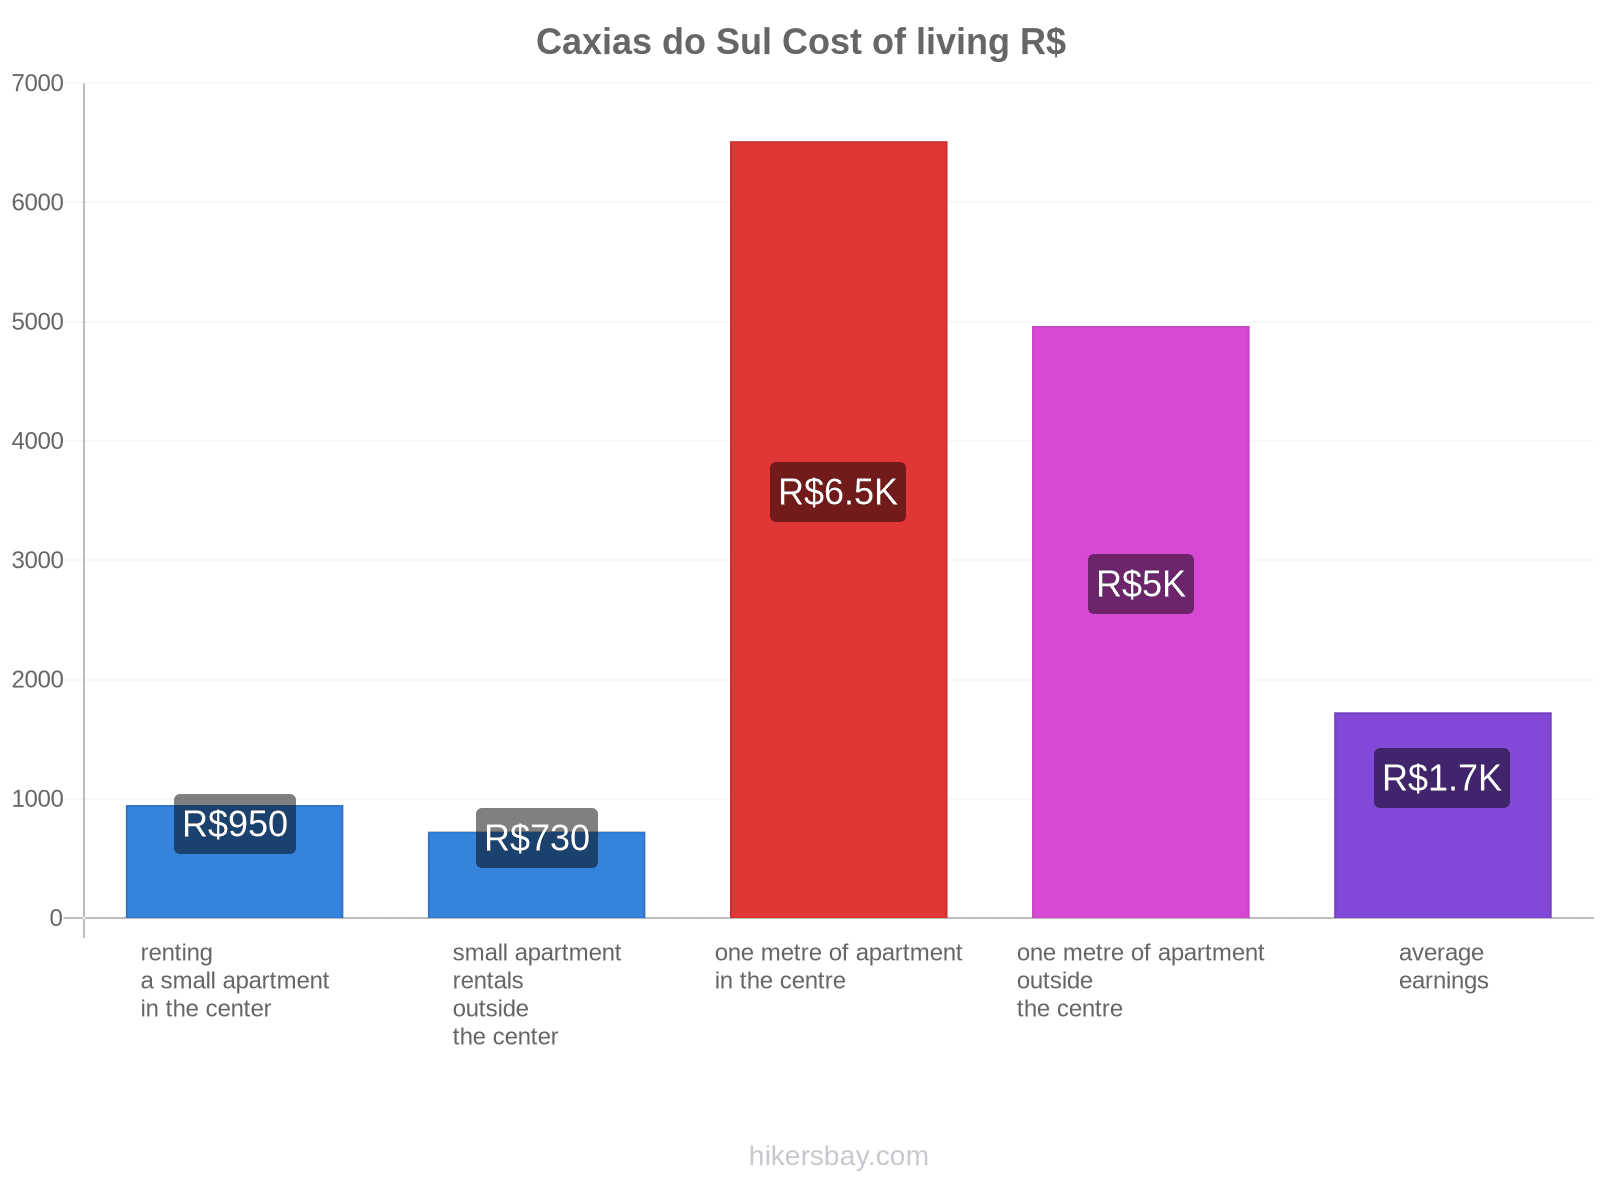 Caxias do Sul cost of living hikersbay.com